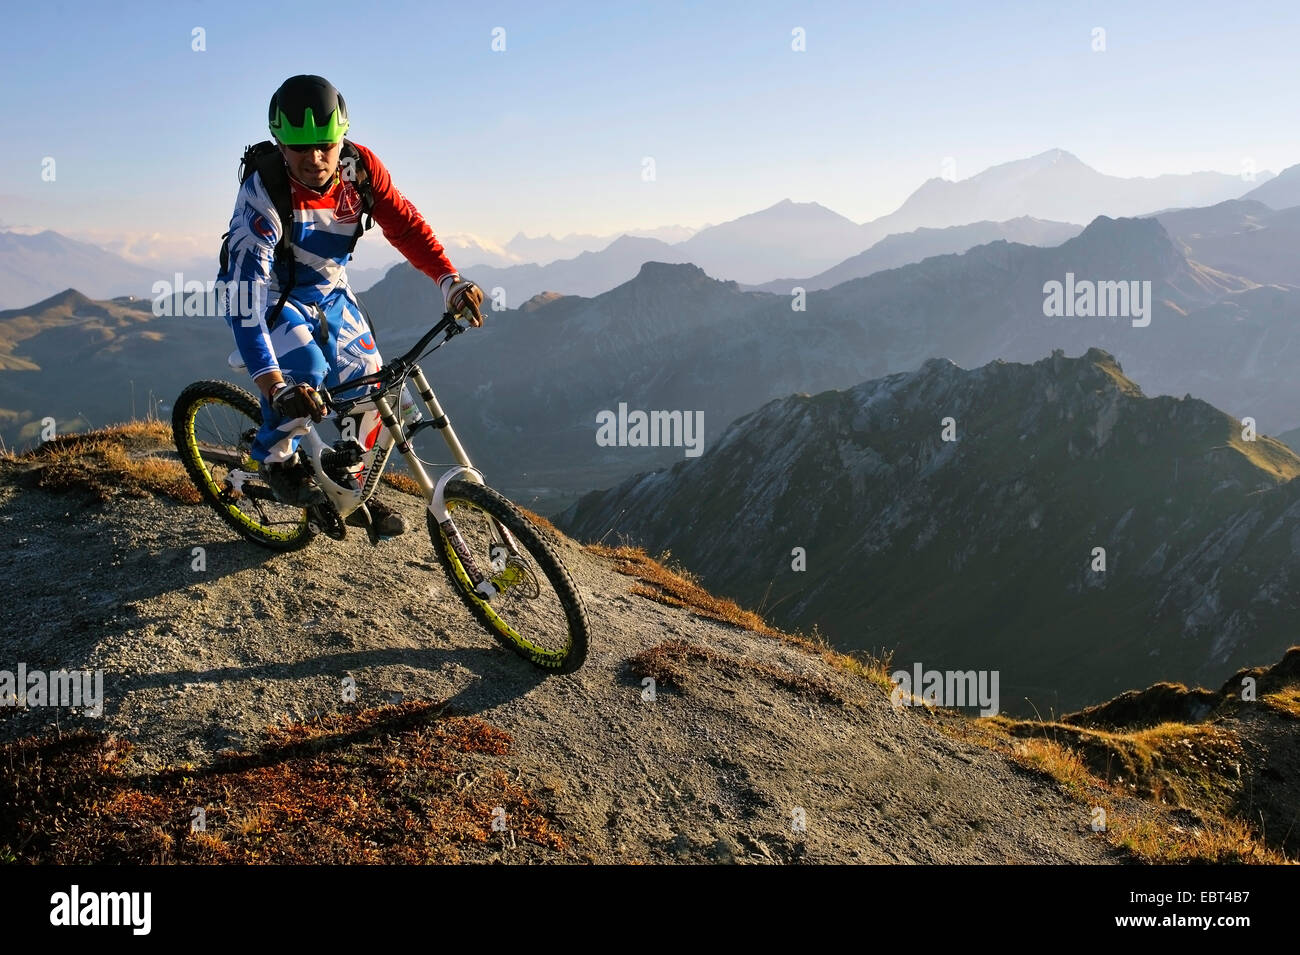 Mountainbiker circonscription vers le bas d'une montagne, le Mont Blanc en arrière-plan, France, Savoie Banque D'Images